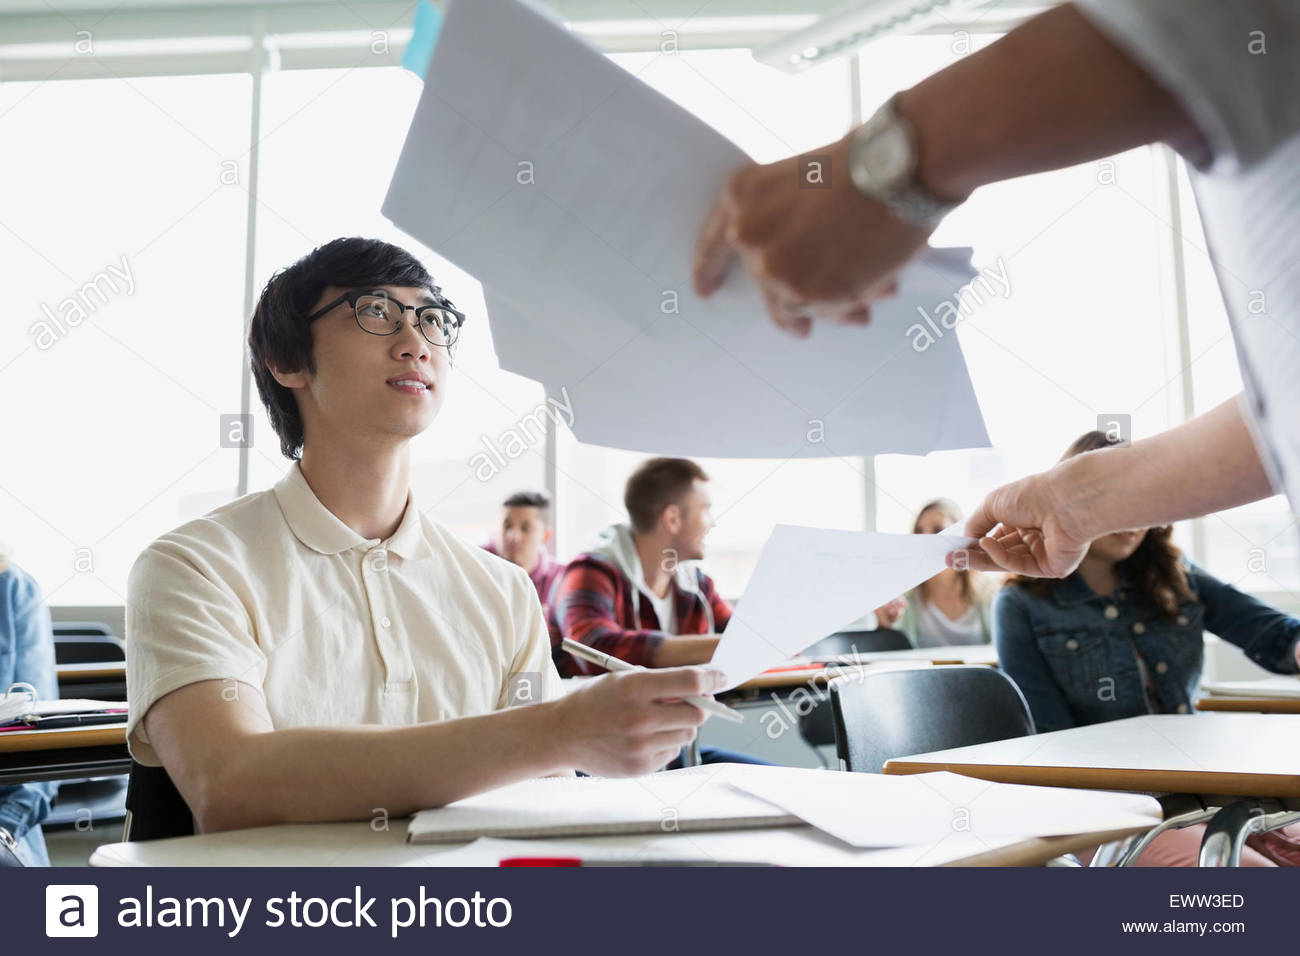 teacher giving homework